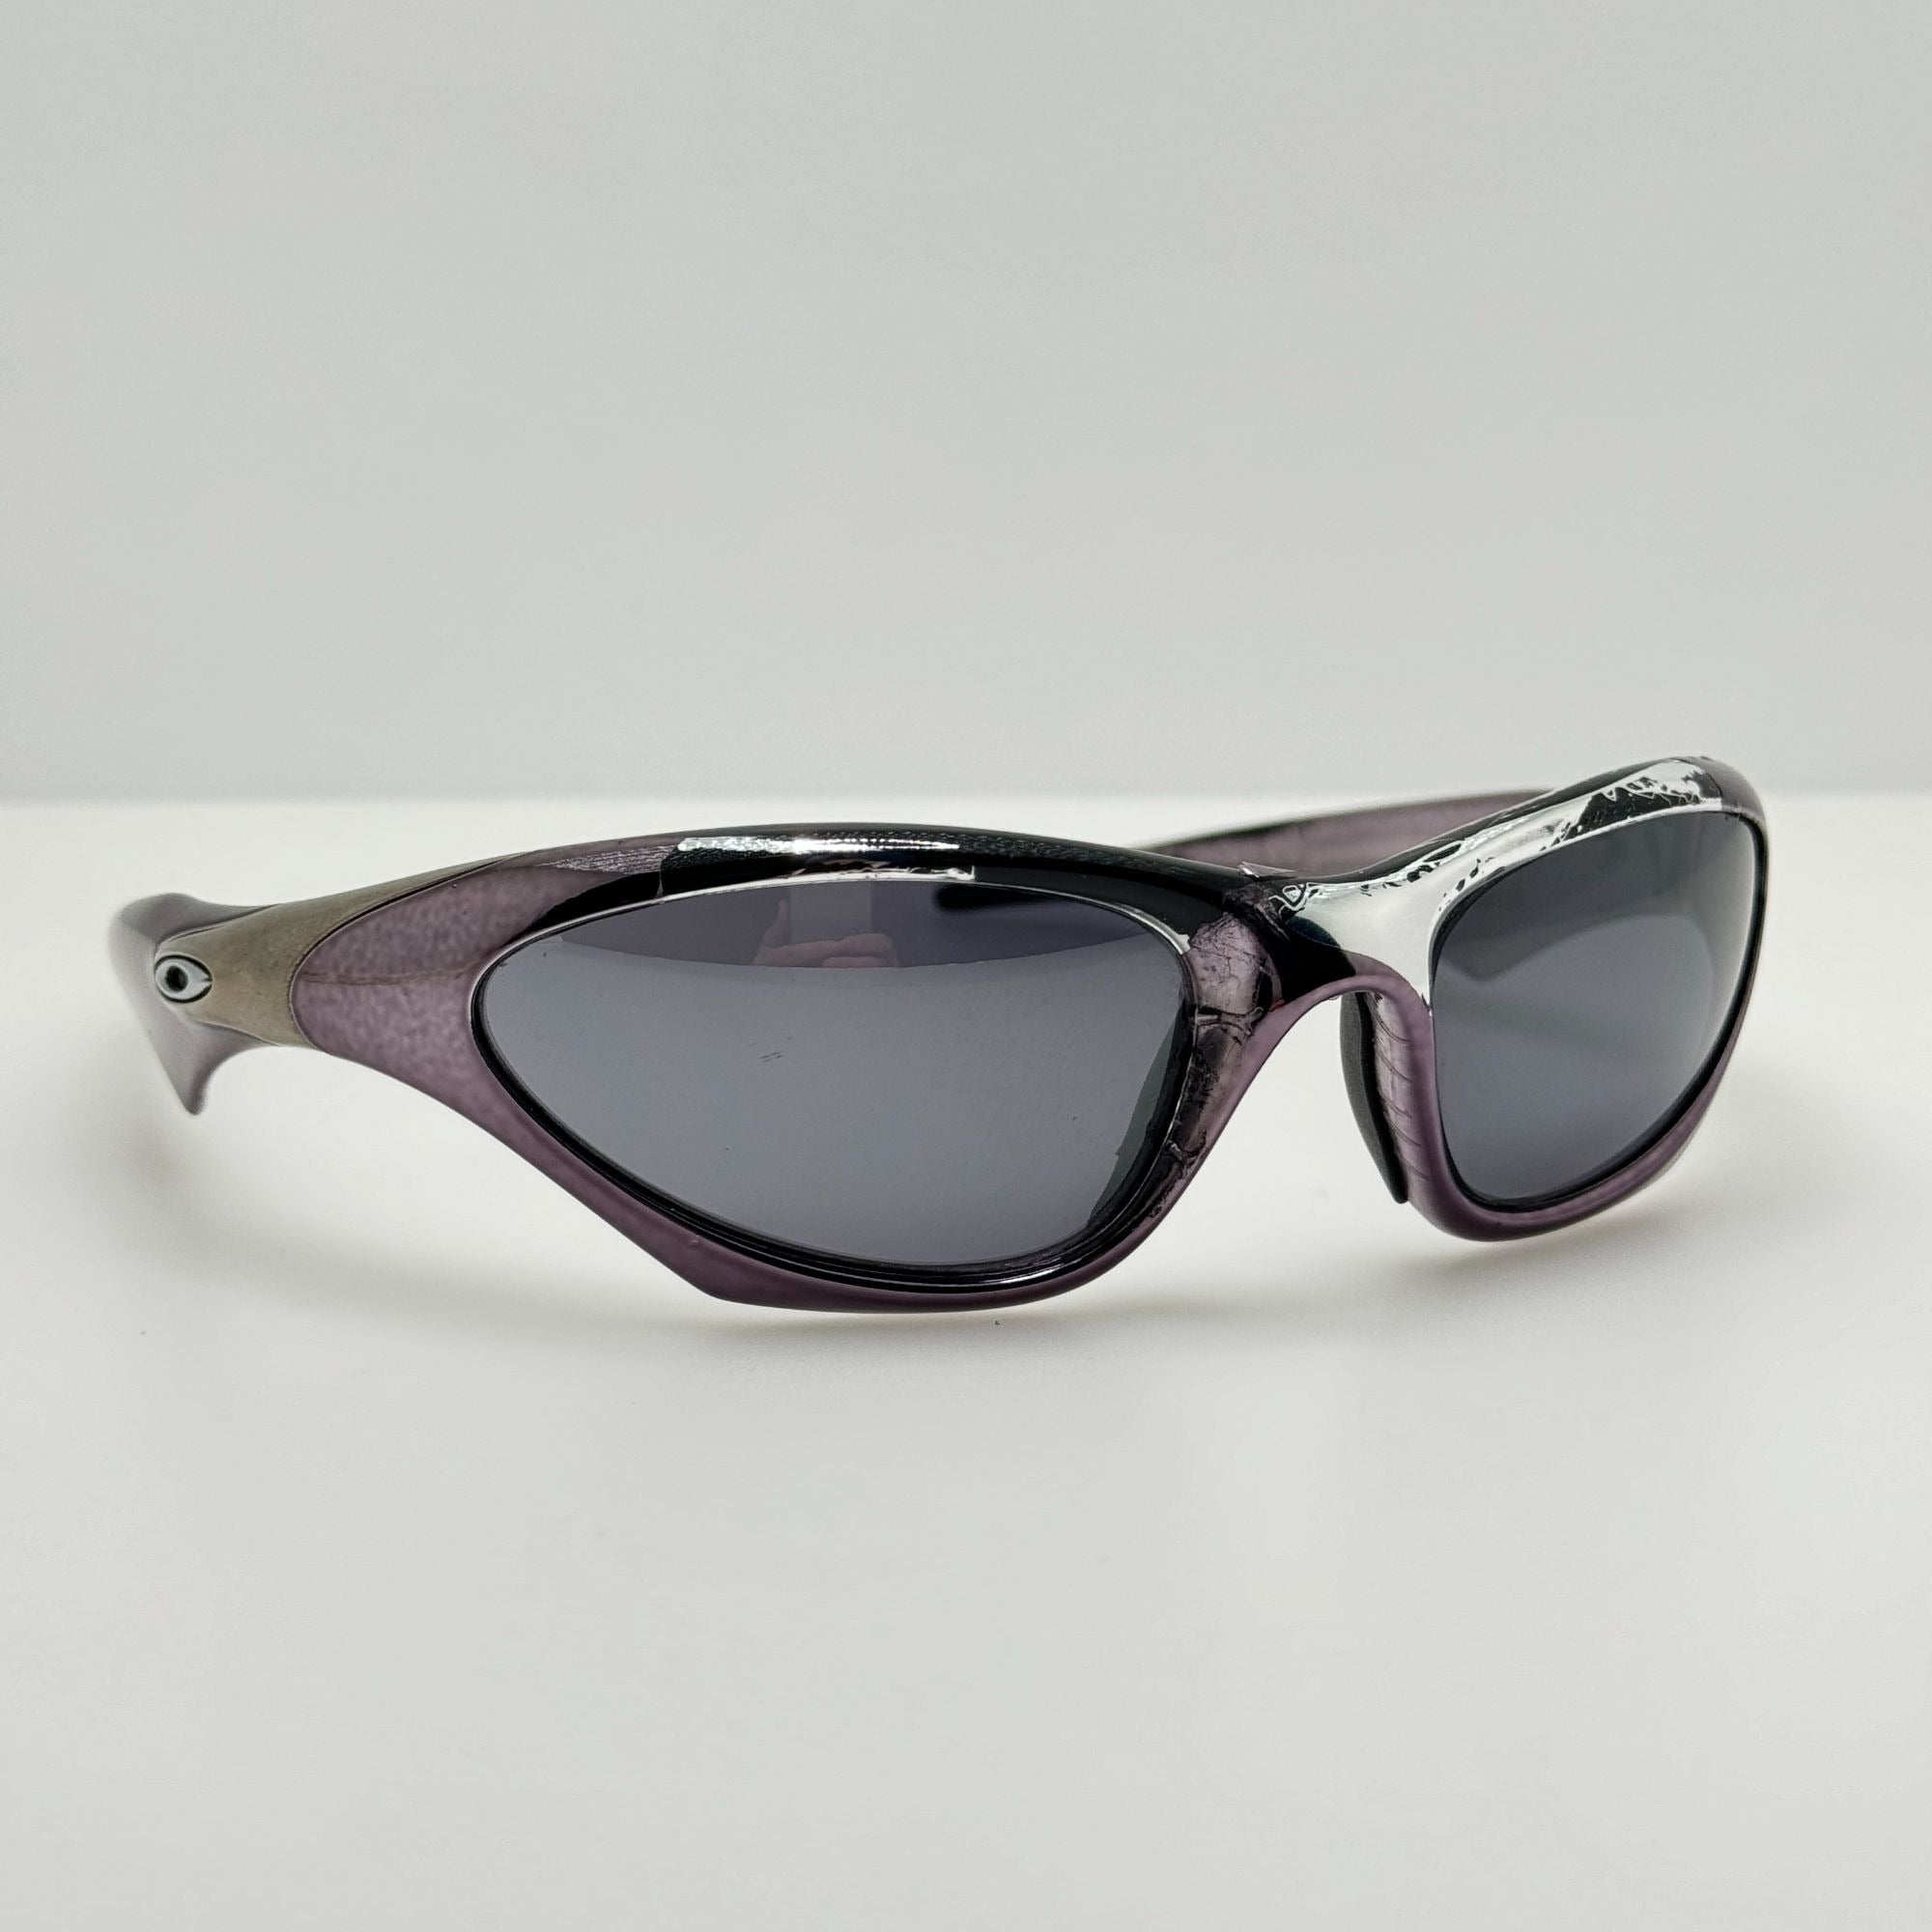 Oakley-Sunglasses-Scar-Purple-Chrome-USA-Read-Description-Sunglasses